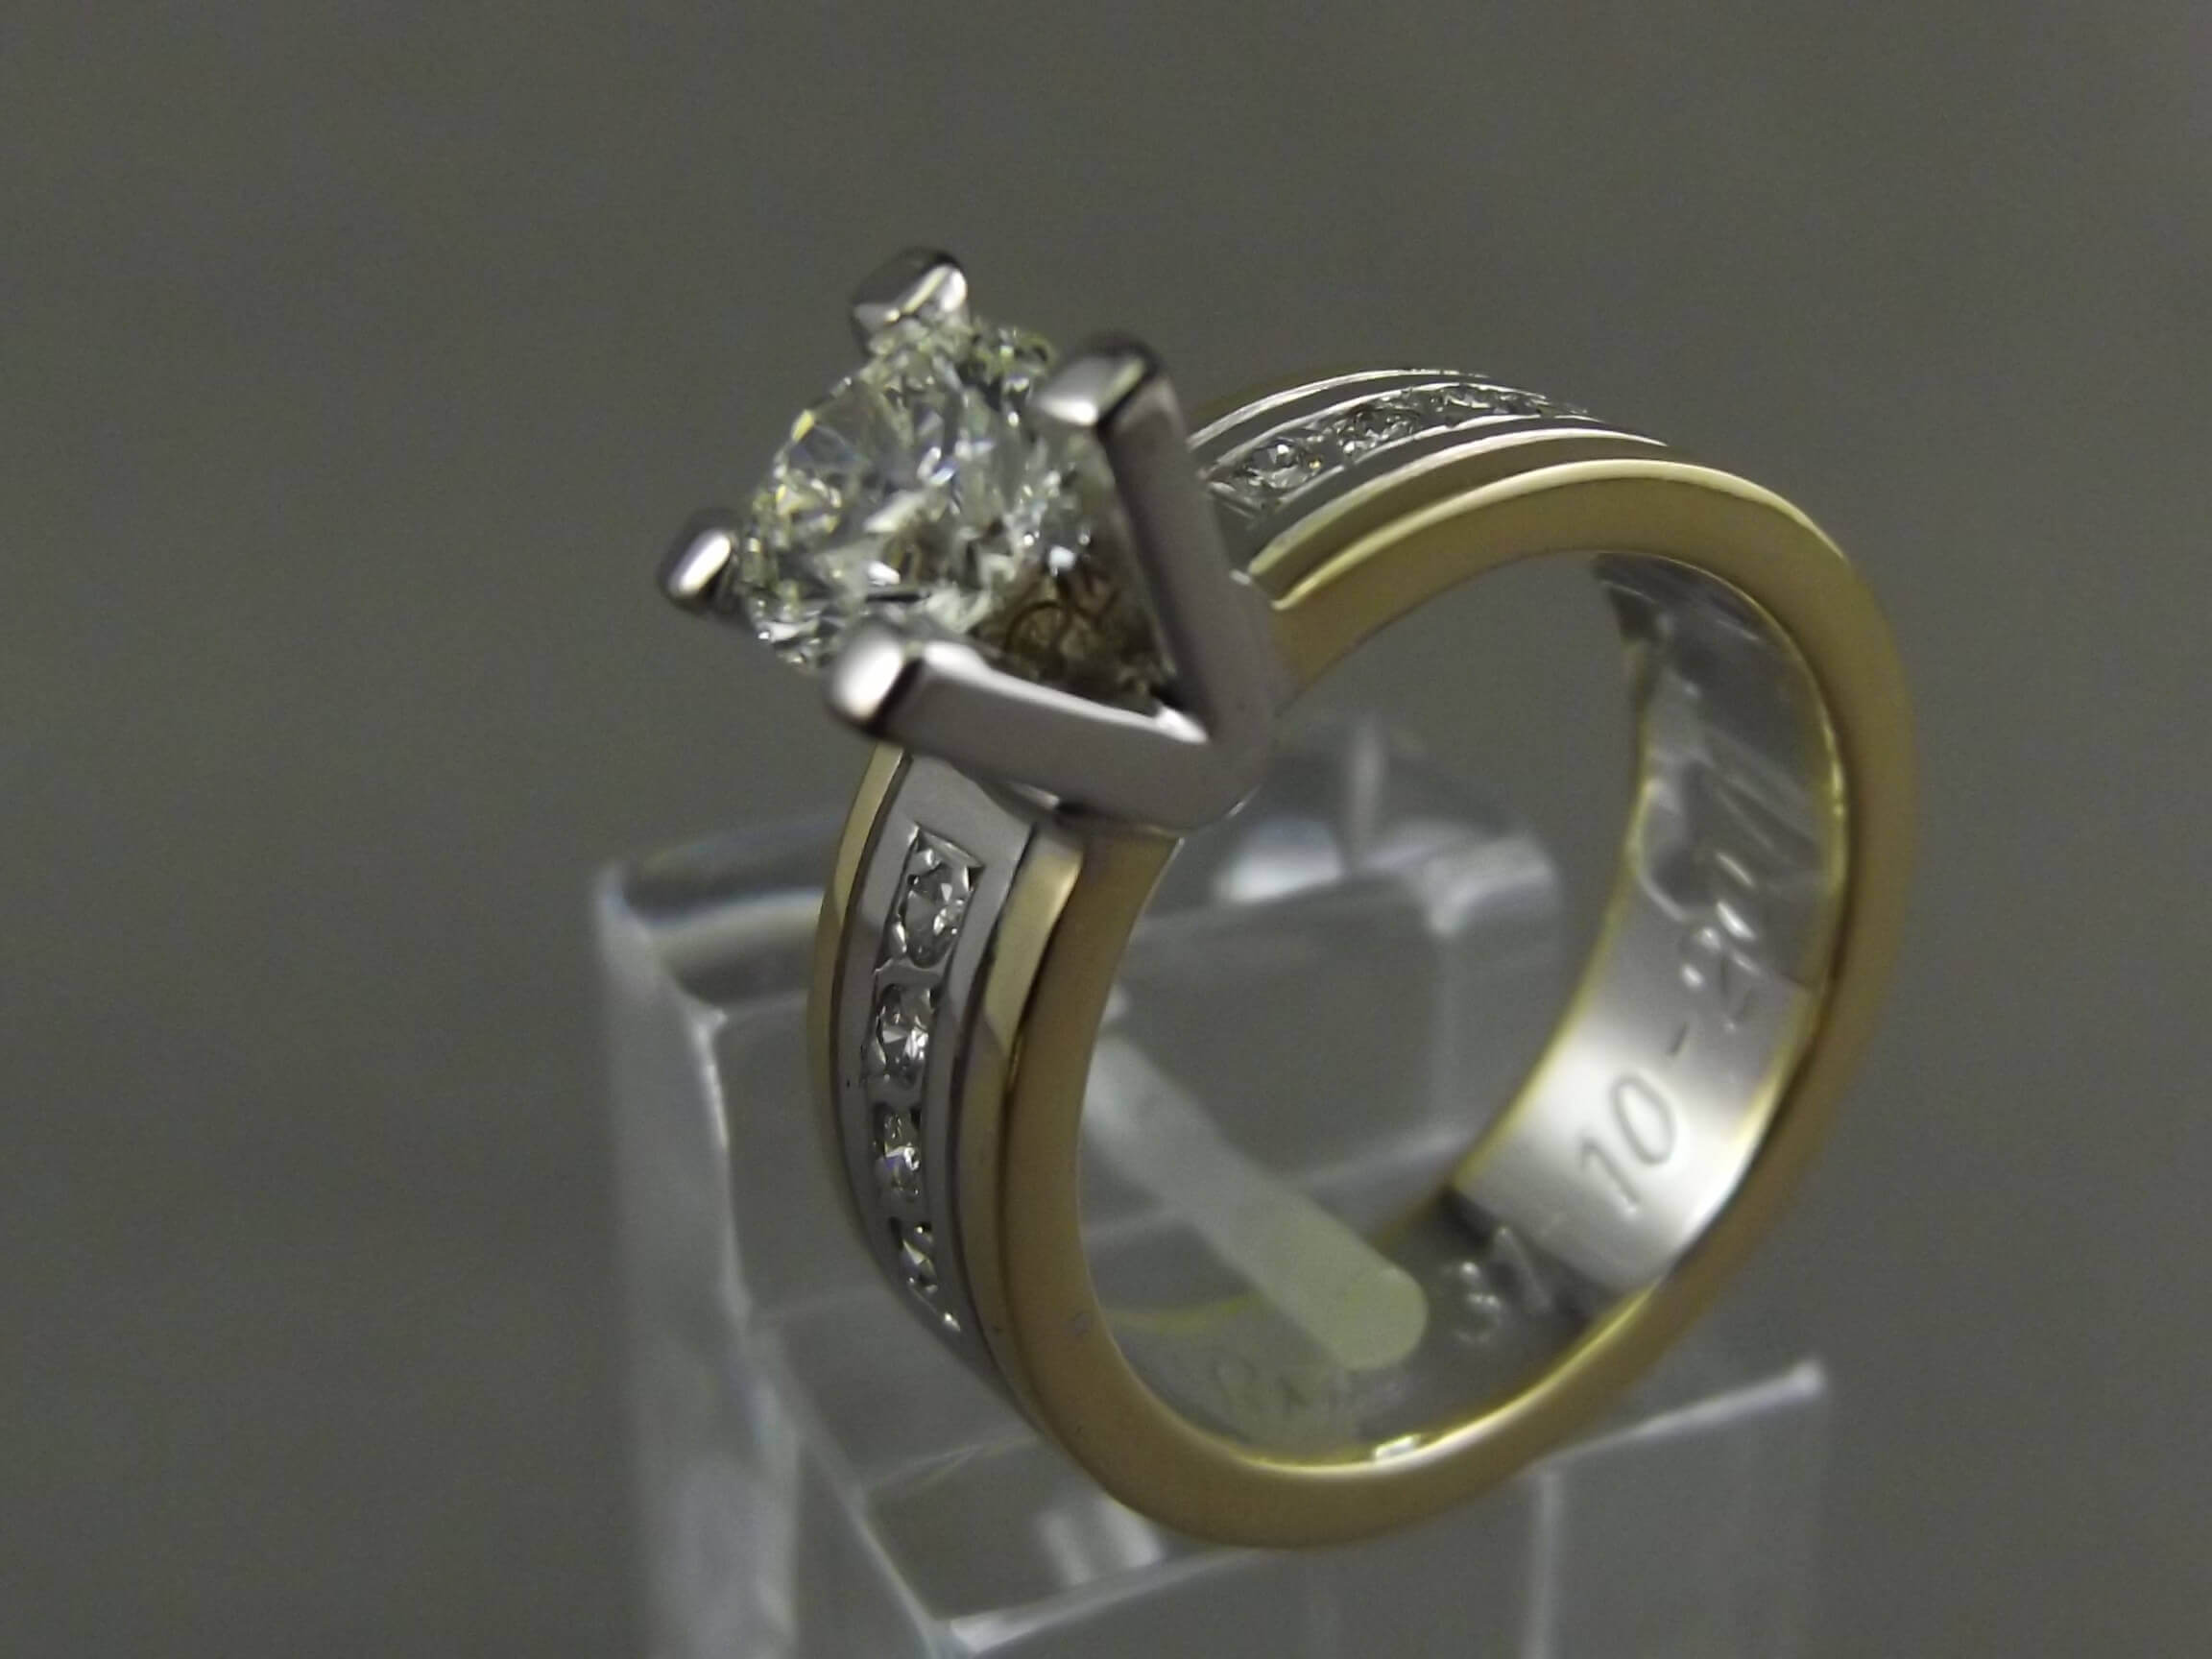 Blaast op Haringen Emuleren Diamanten ring Antwerpen | Juwelier Helmond